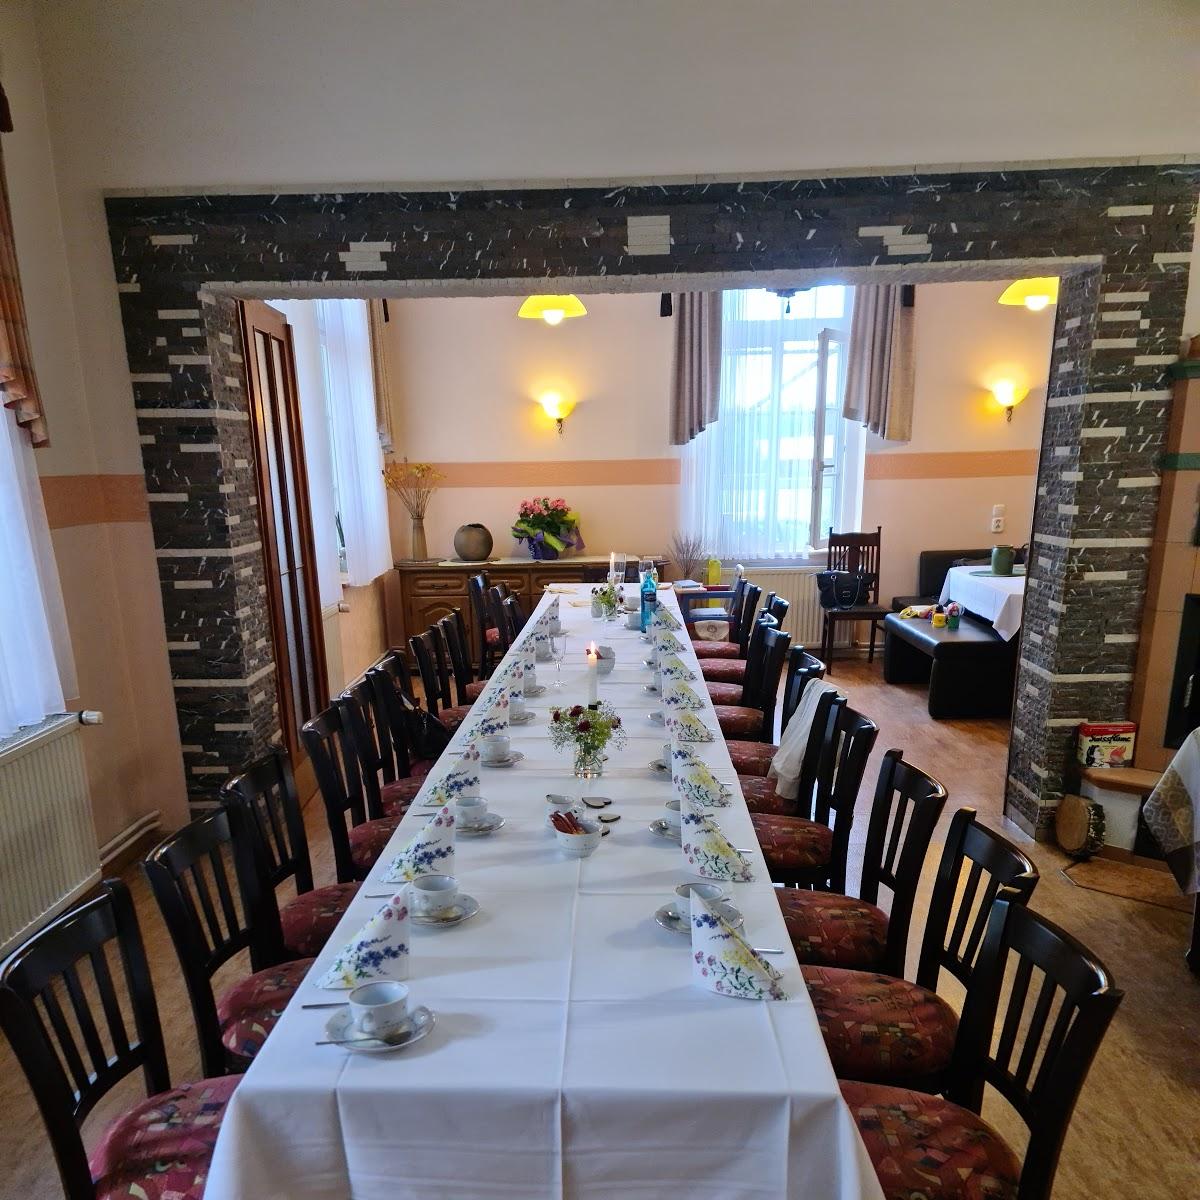 Restaurant "Gasthaus In den Bergen" in Luckaitztal